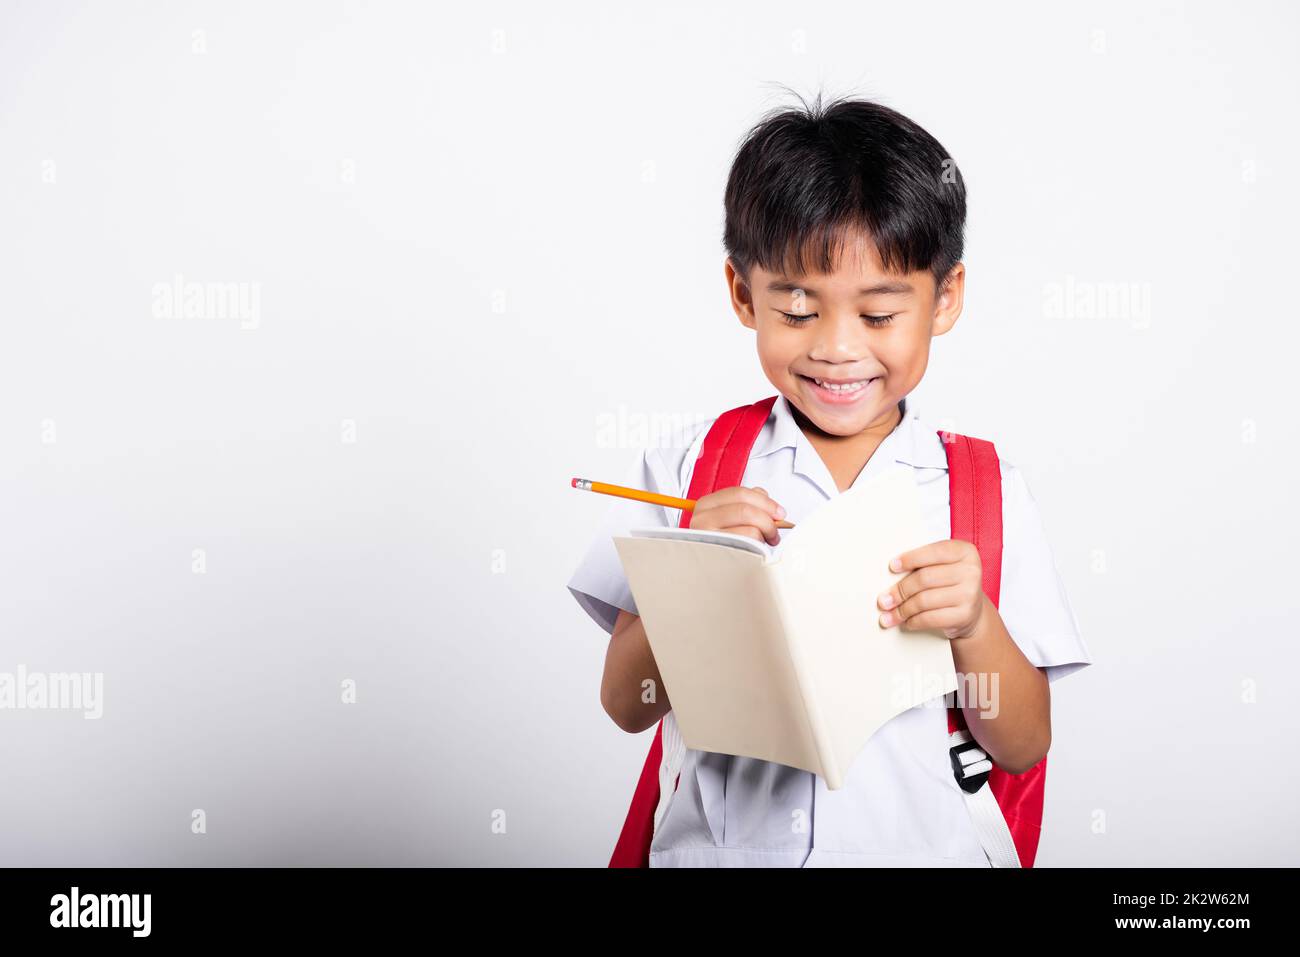 Asiatique tout-petit sourire Happy Wear étudiant thaïlandais uniforme pantalon rouge tenant un crayon pour les écrivains cahier Banque D'Images